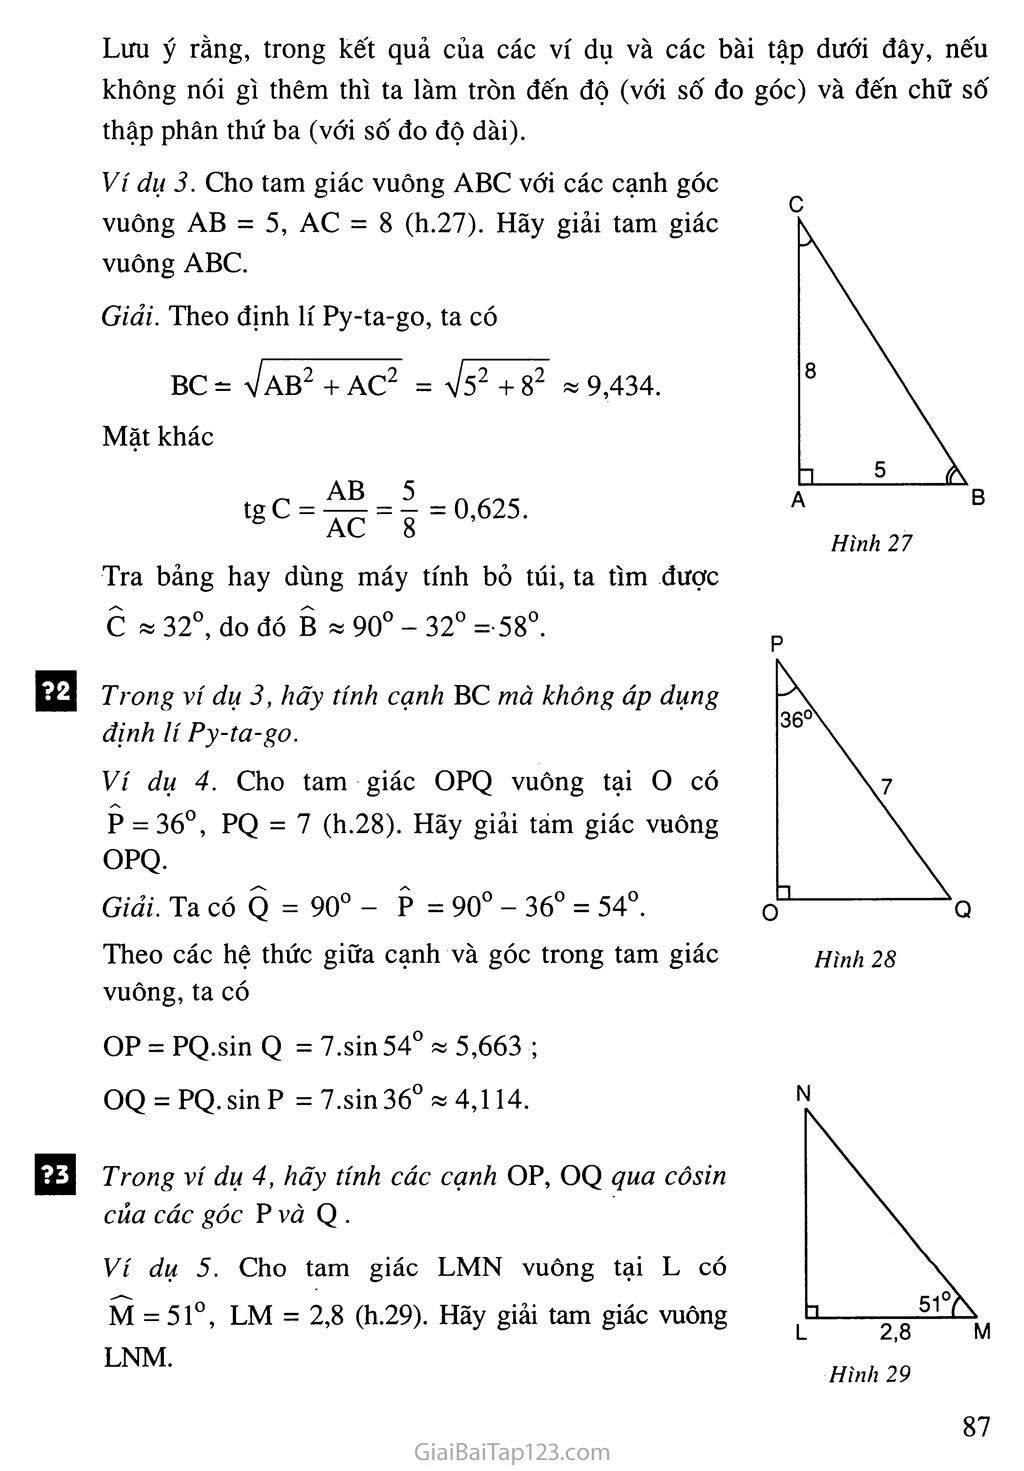 Bài 4. Một số hệ thức về cạnh và góc trong tam giác vuông trang 3